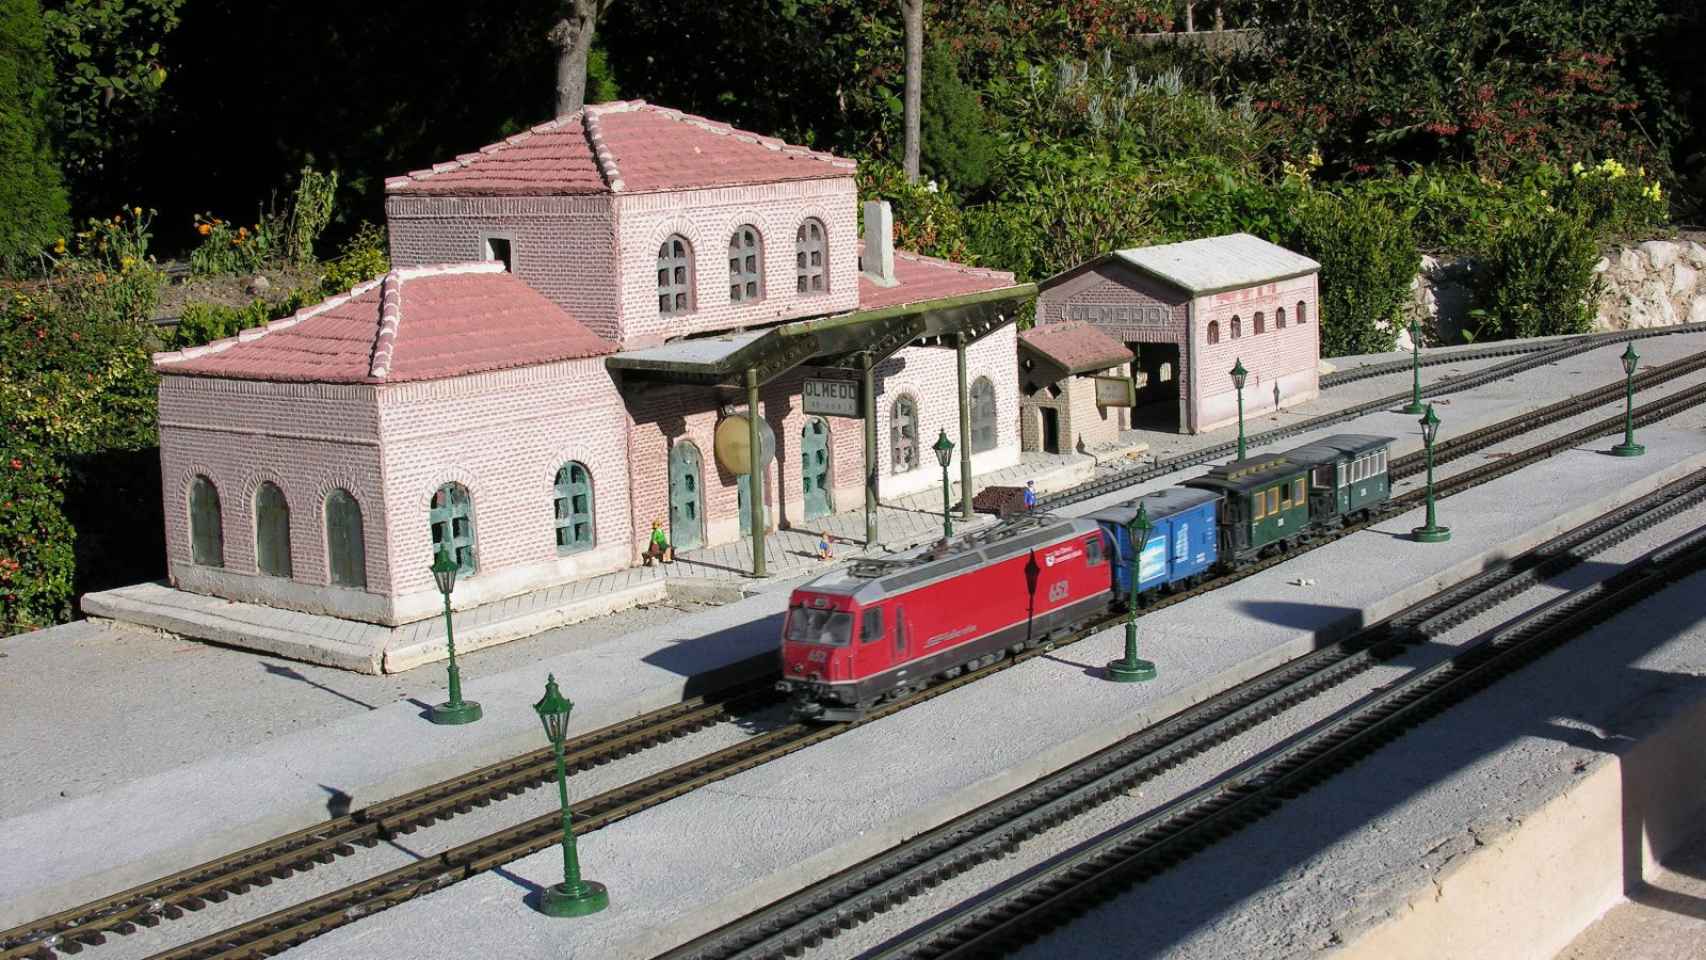 La estación de tren de Olmedo en miniatura